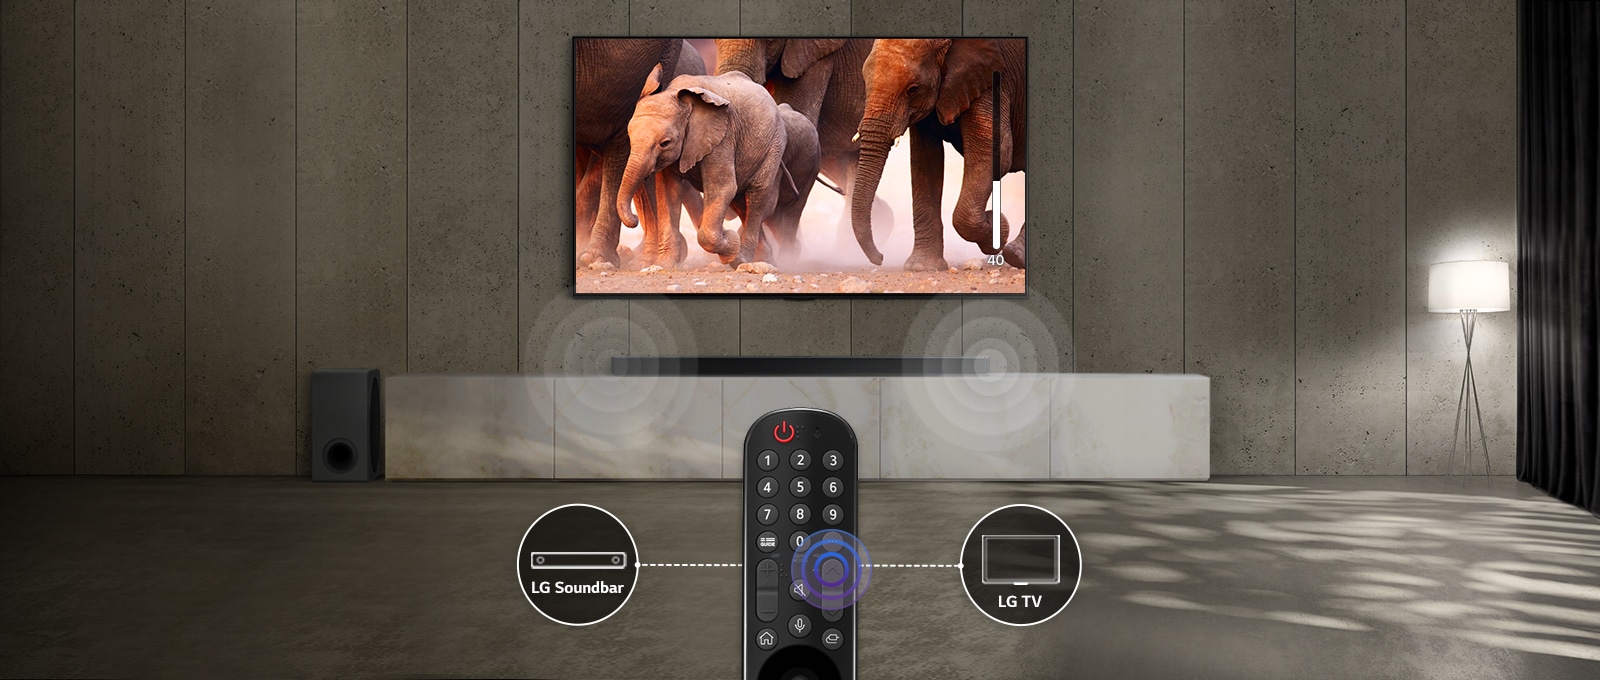 TV i et rom med dempet belysning viser bilder av elefanter som passerer. Og det er en lydeffekt på lydplanken under TV-en. Nederst i bildet er det en TV-fjernkontroll og lydplanken og ikonet for TV-en kobles sammen til venstre og høyre for fjernkontrollen.